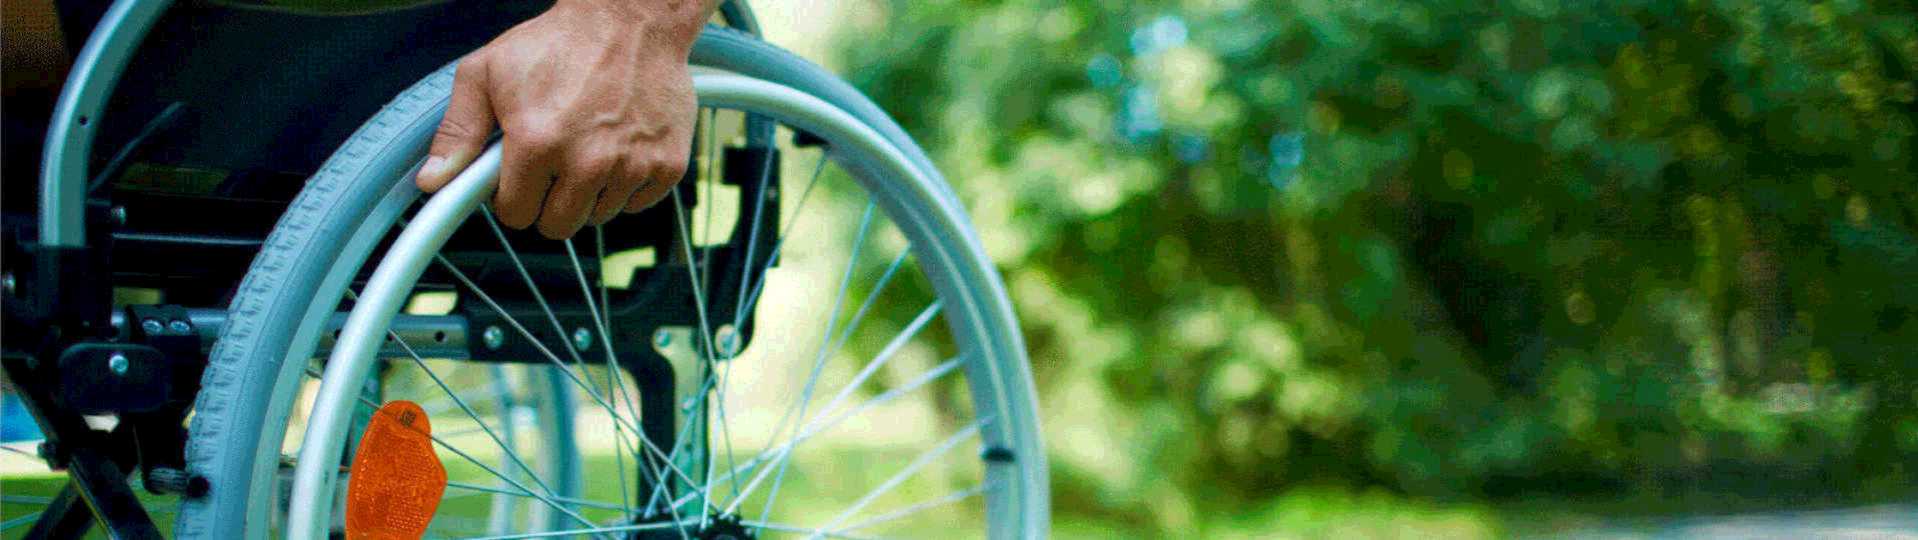 un primer plano de una persona en silla de ruedas, estÃ¡ empujando una rueda, el fondo de la imagen es de color verde